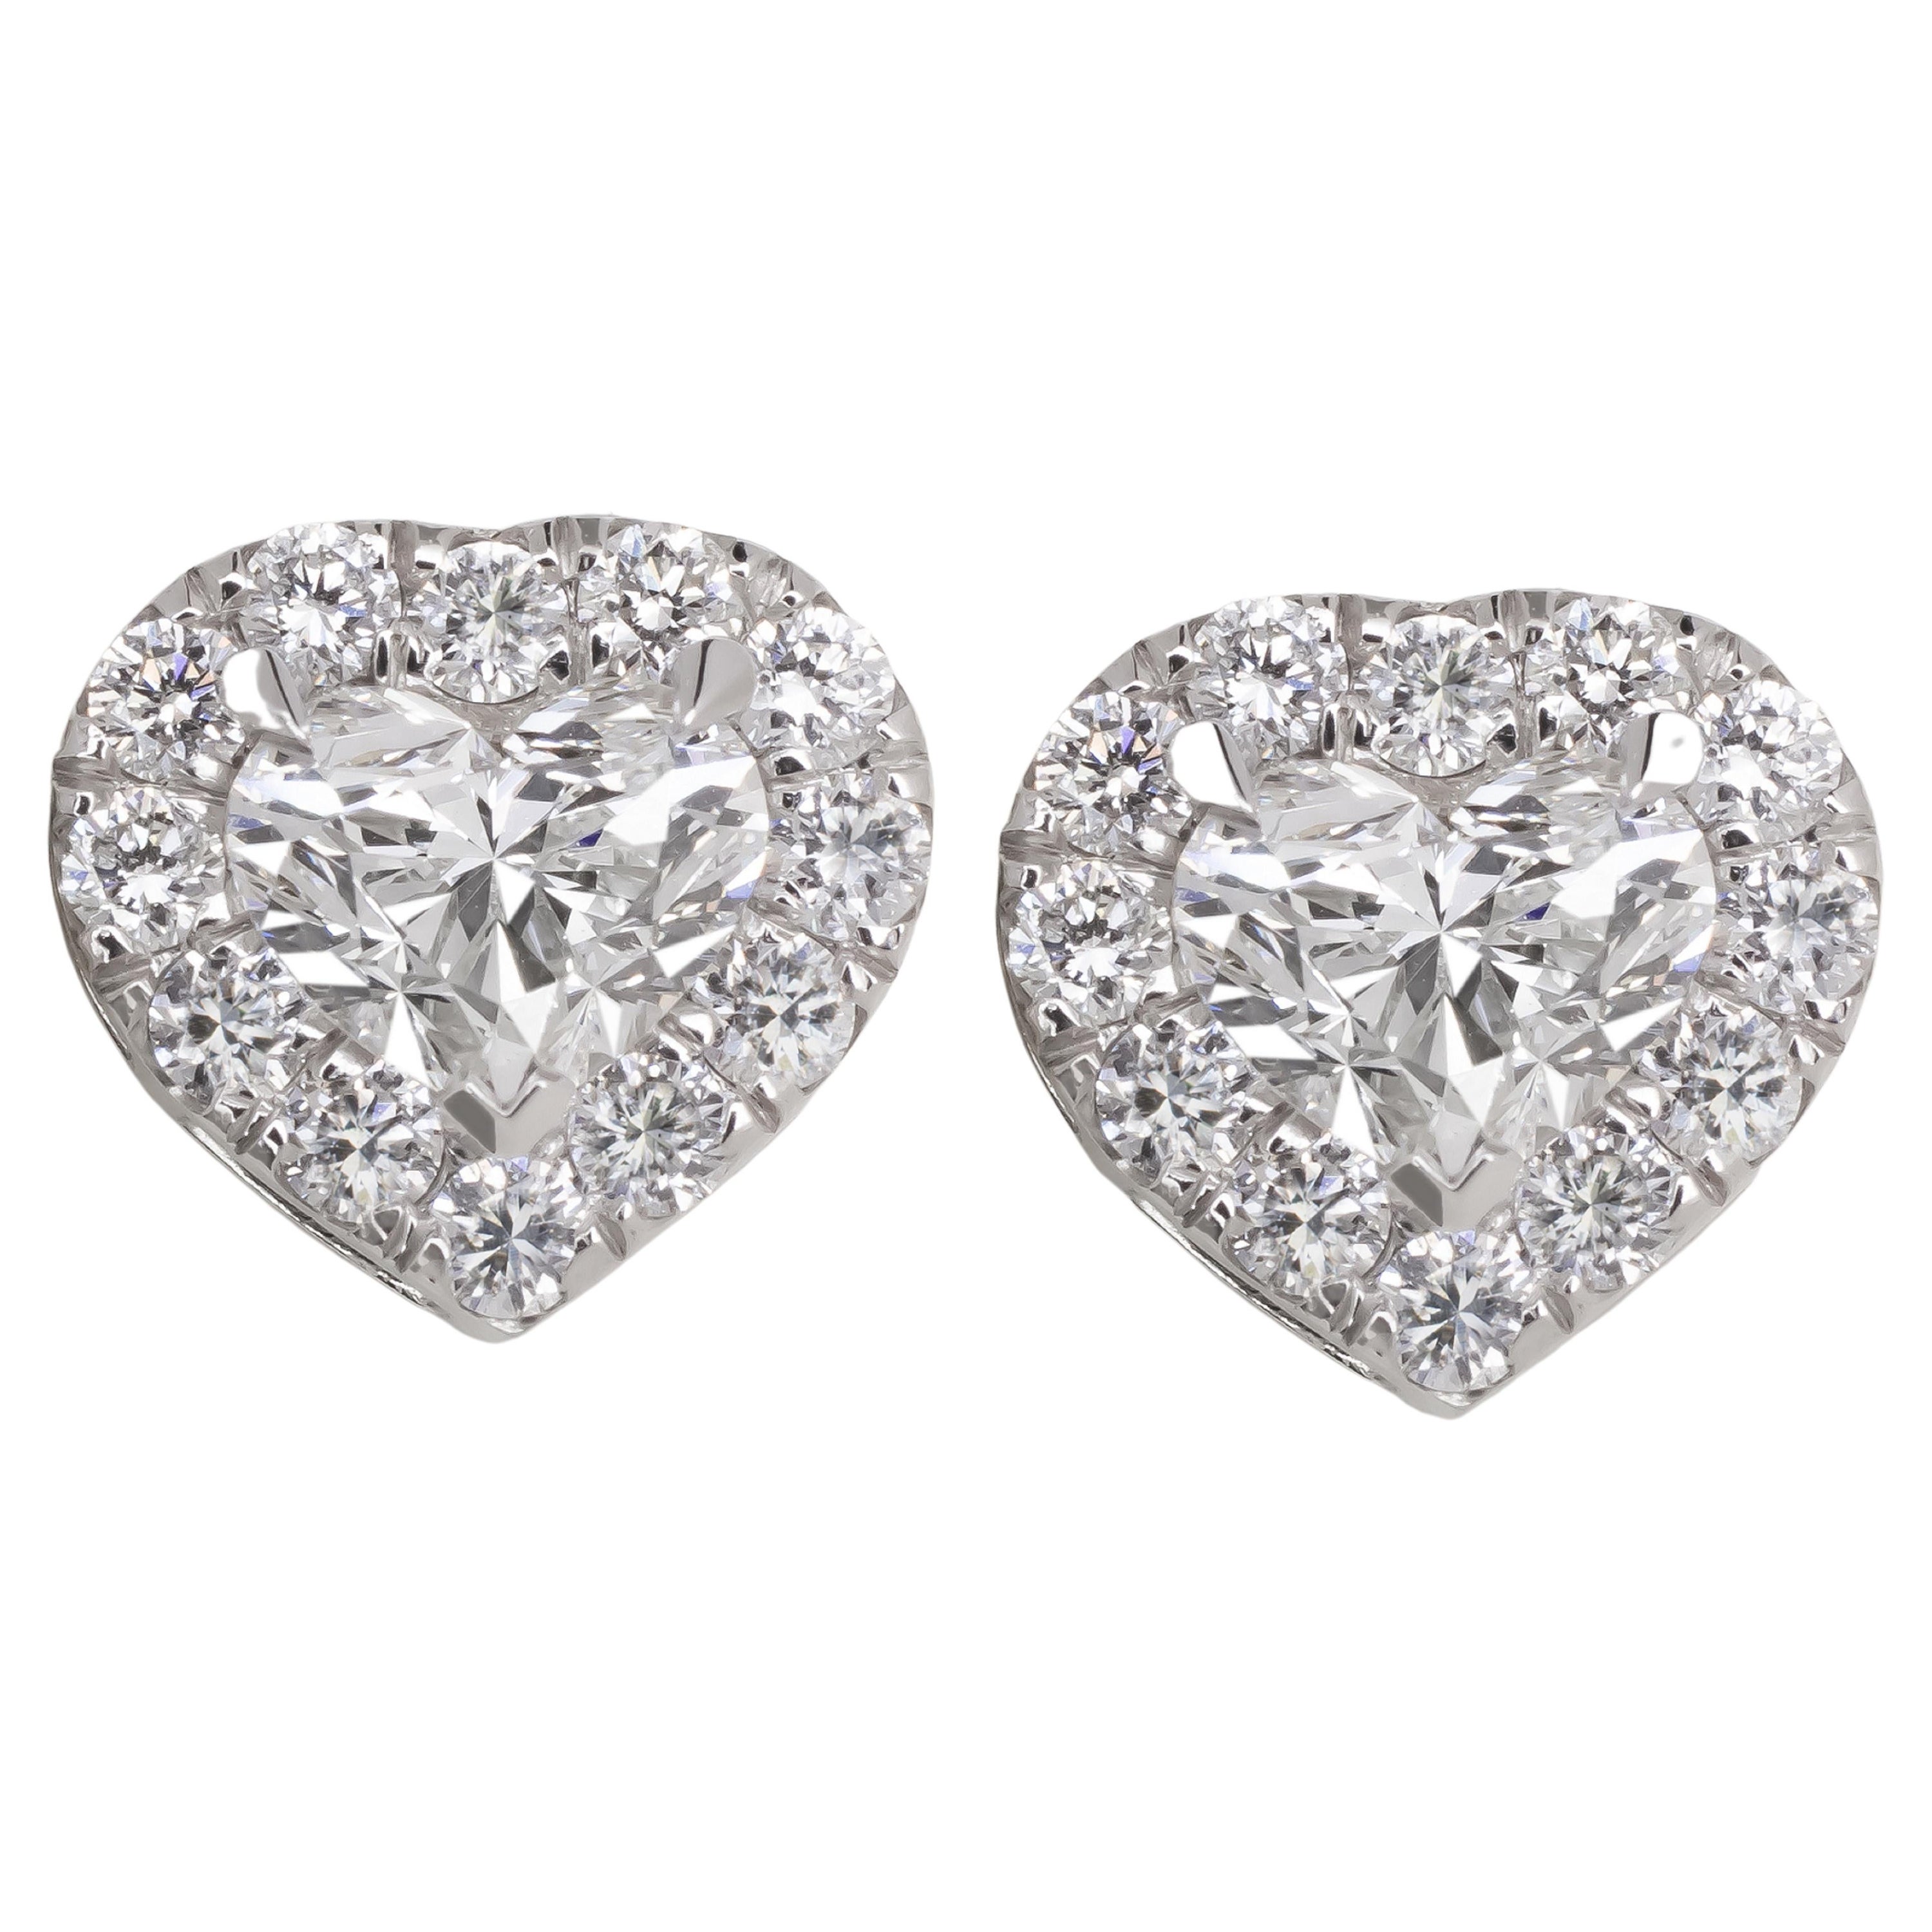 Clous de diamants en forme de cœur de 2 carats certifiés GIA, couleur D/E, pureté VVS1